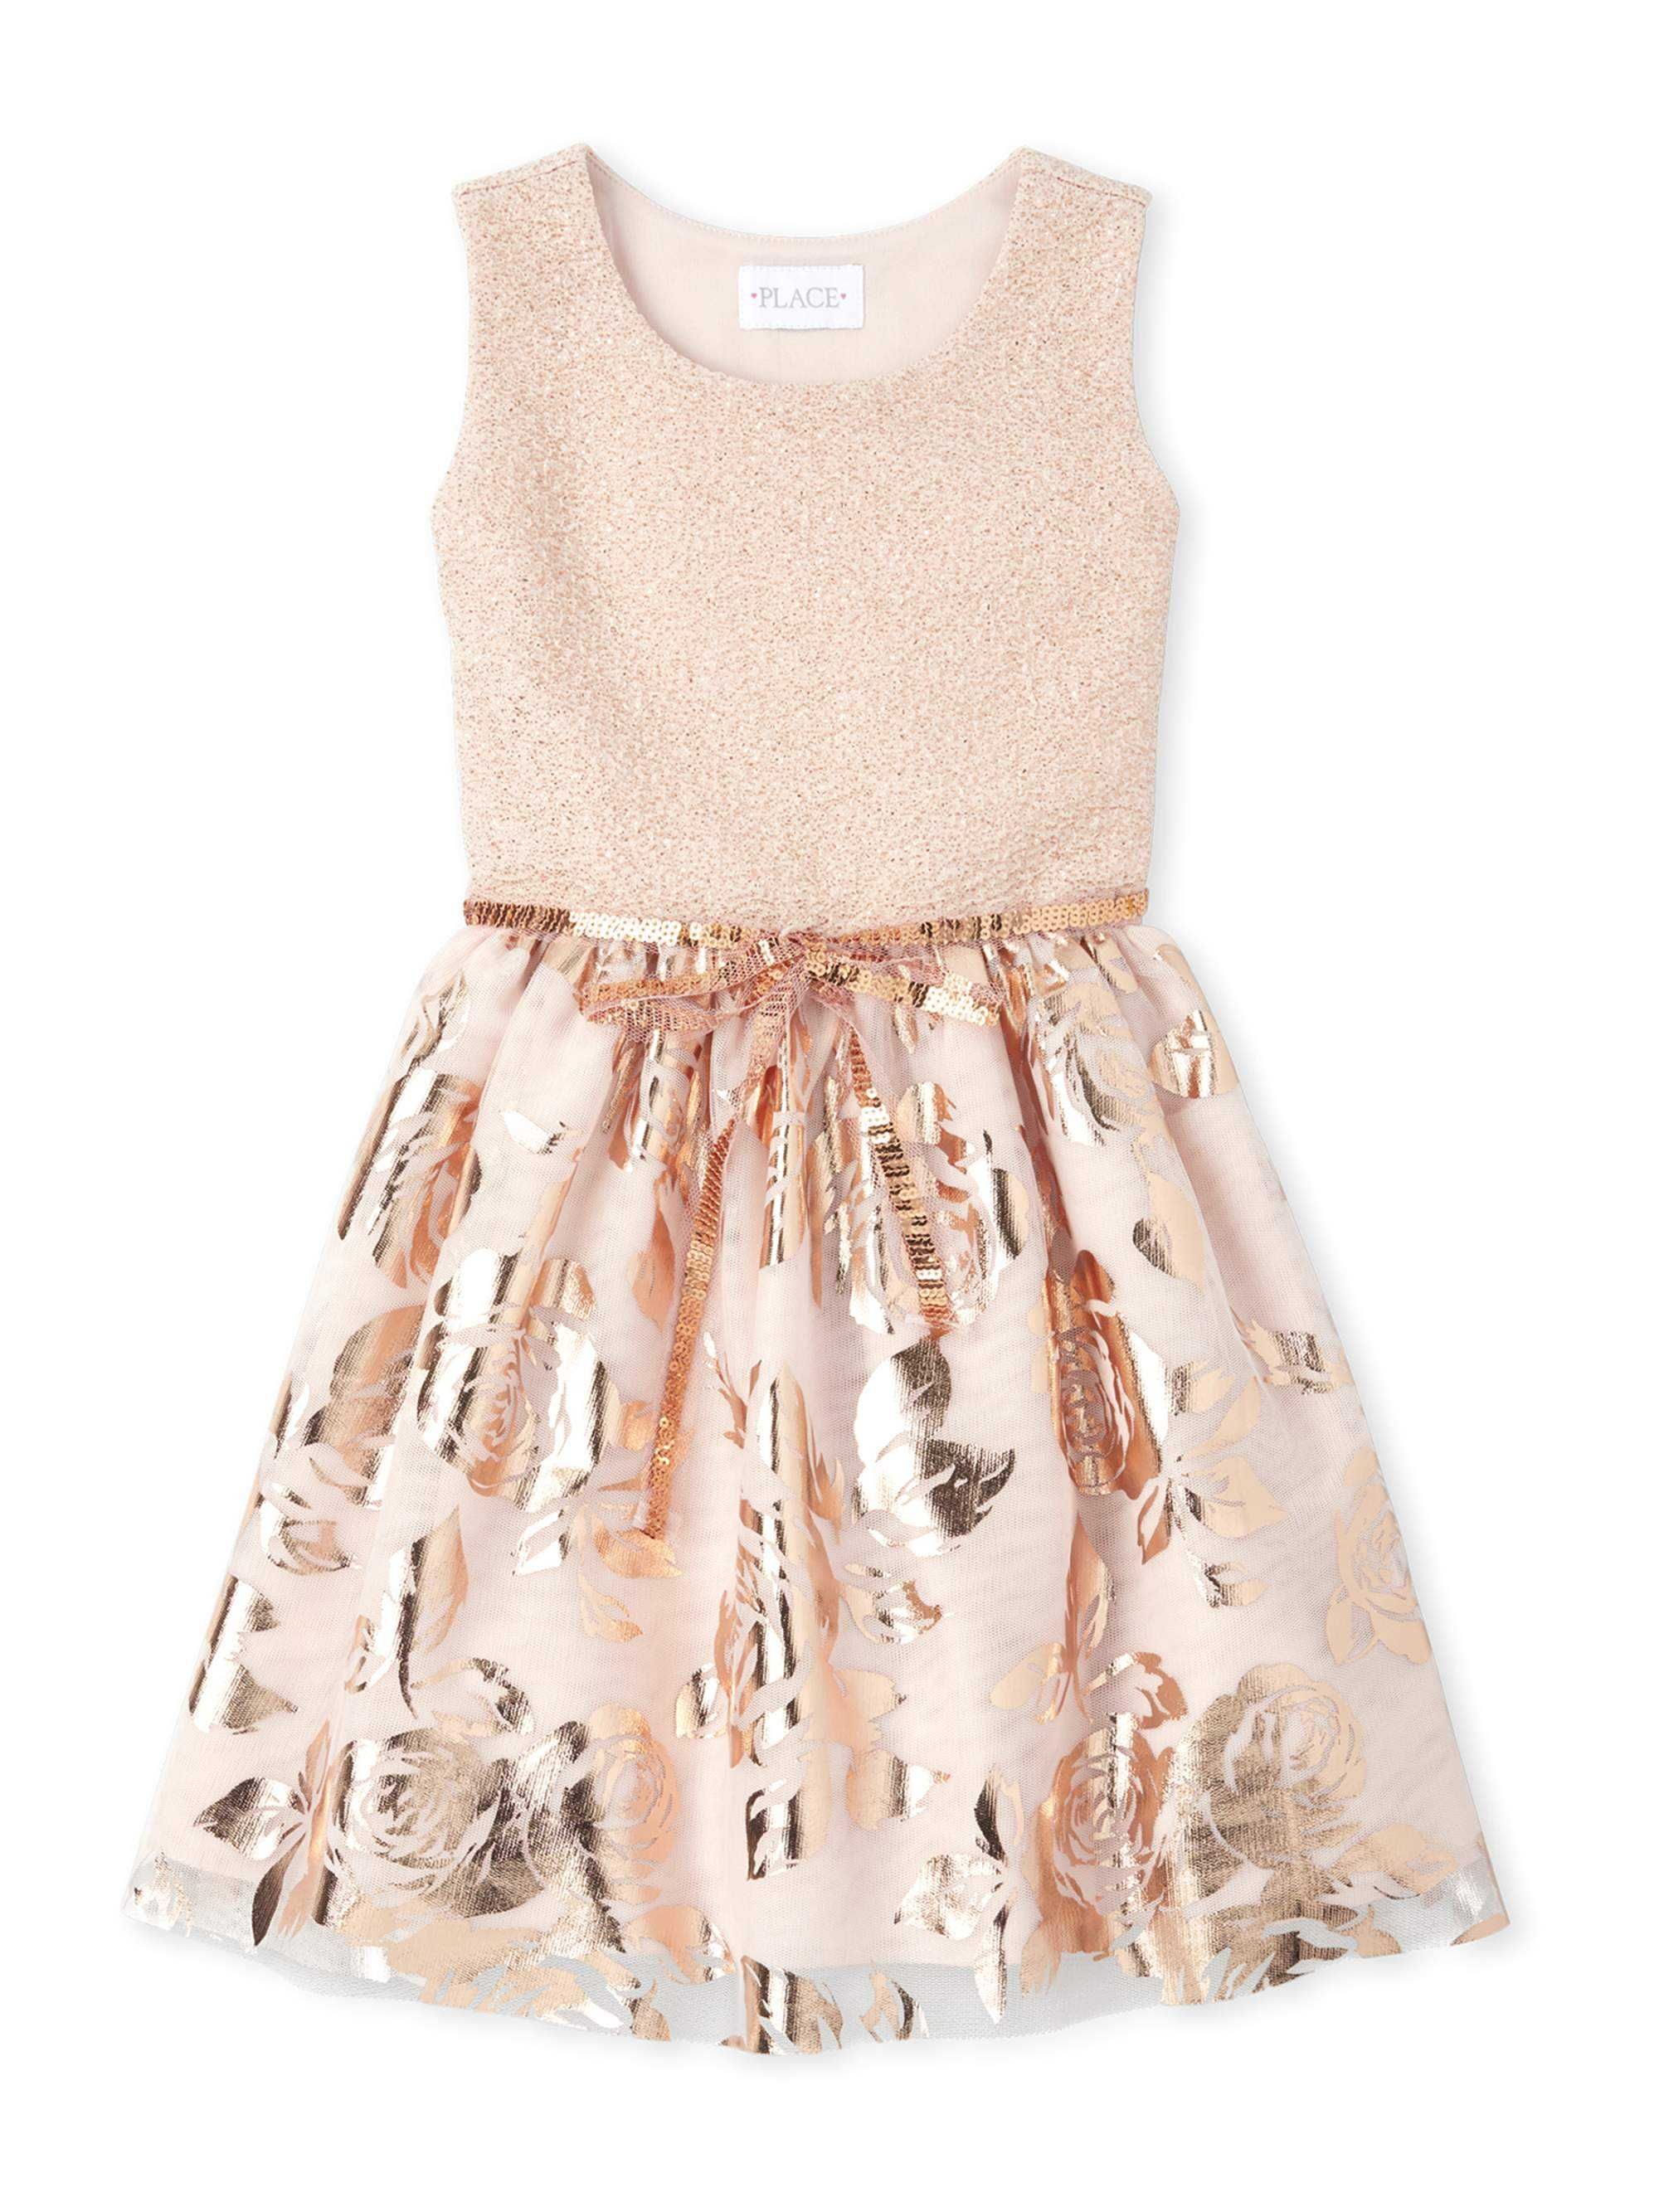 Платье нарядное с блестящей юбкой Сhildrens Рlace, размер 4 года